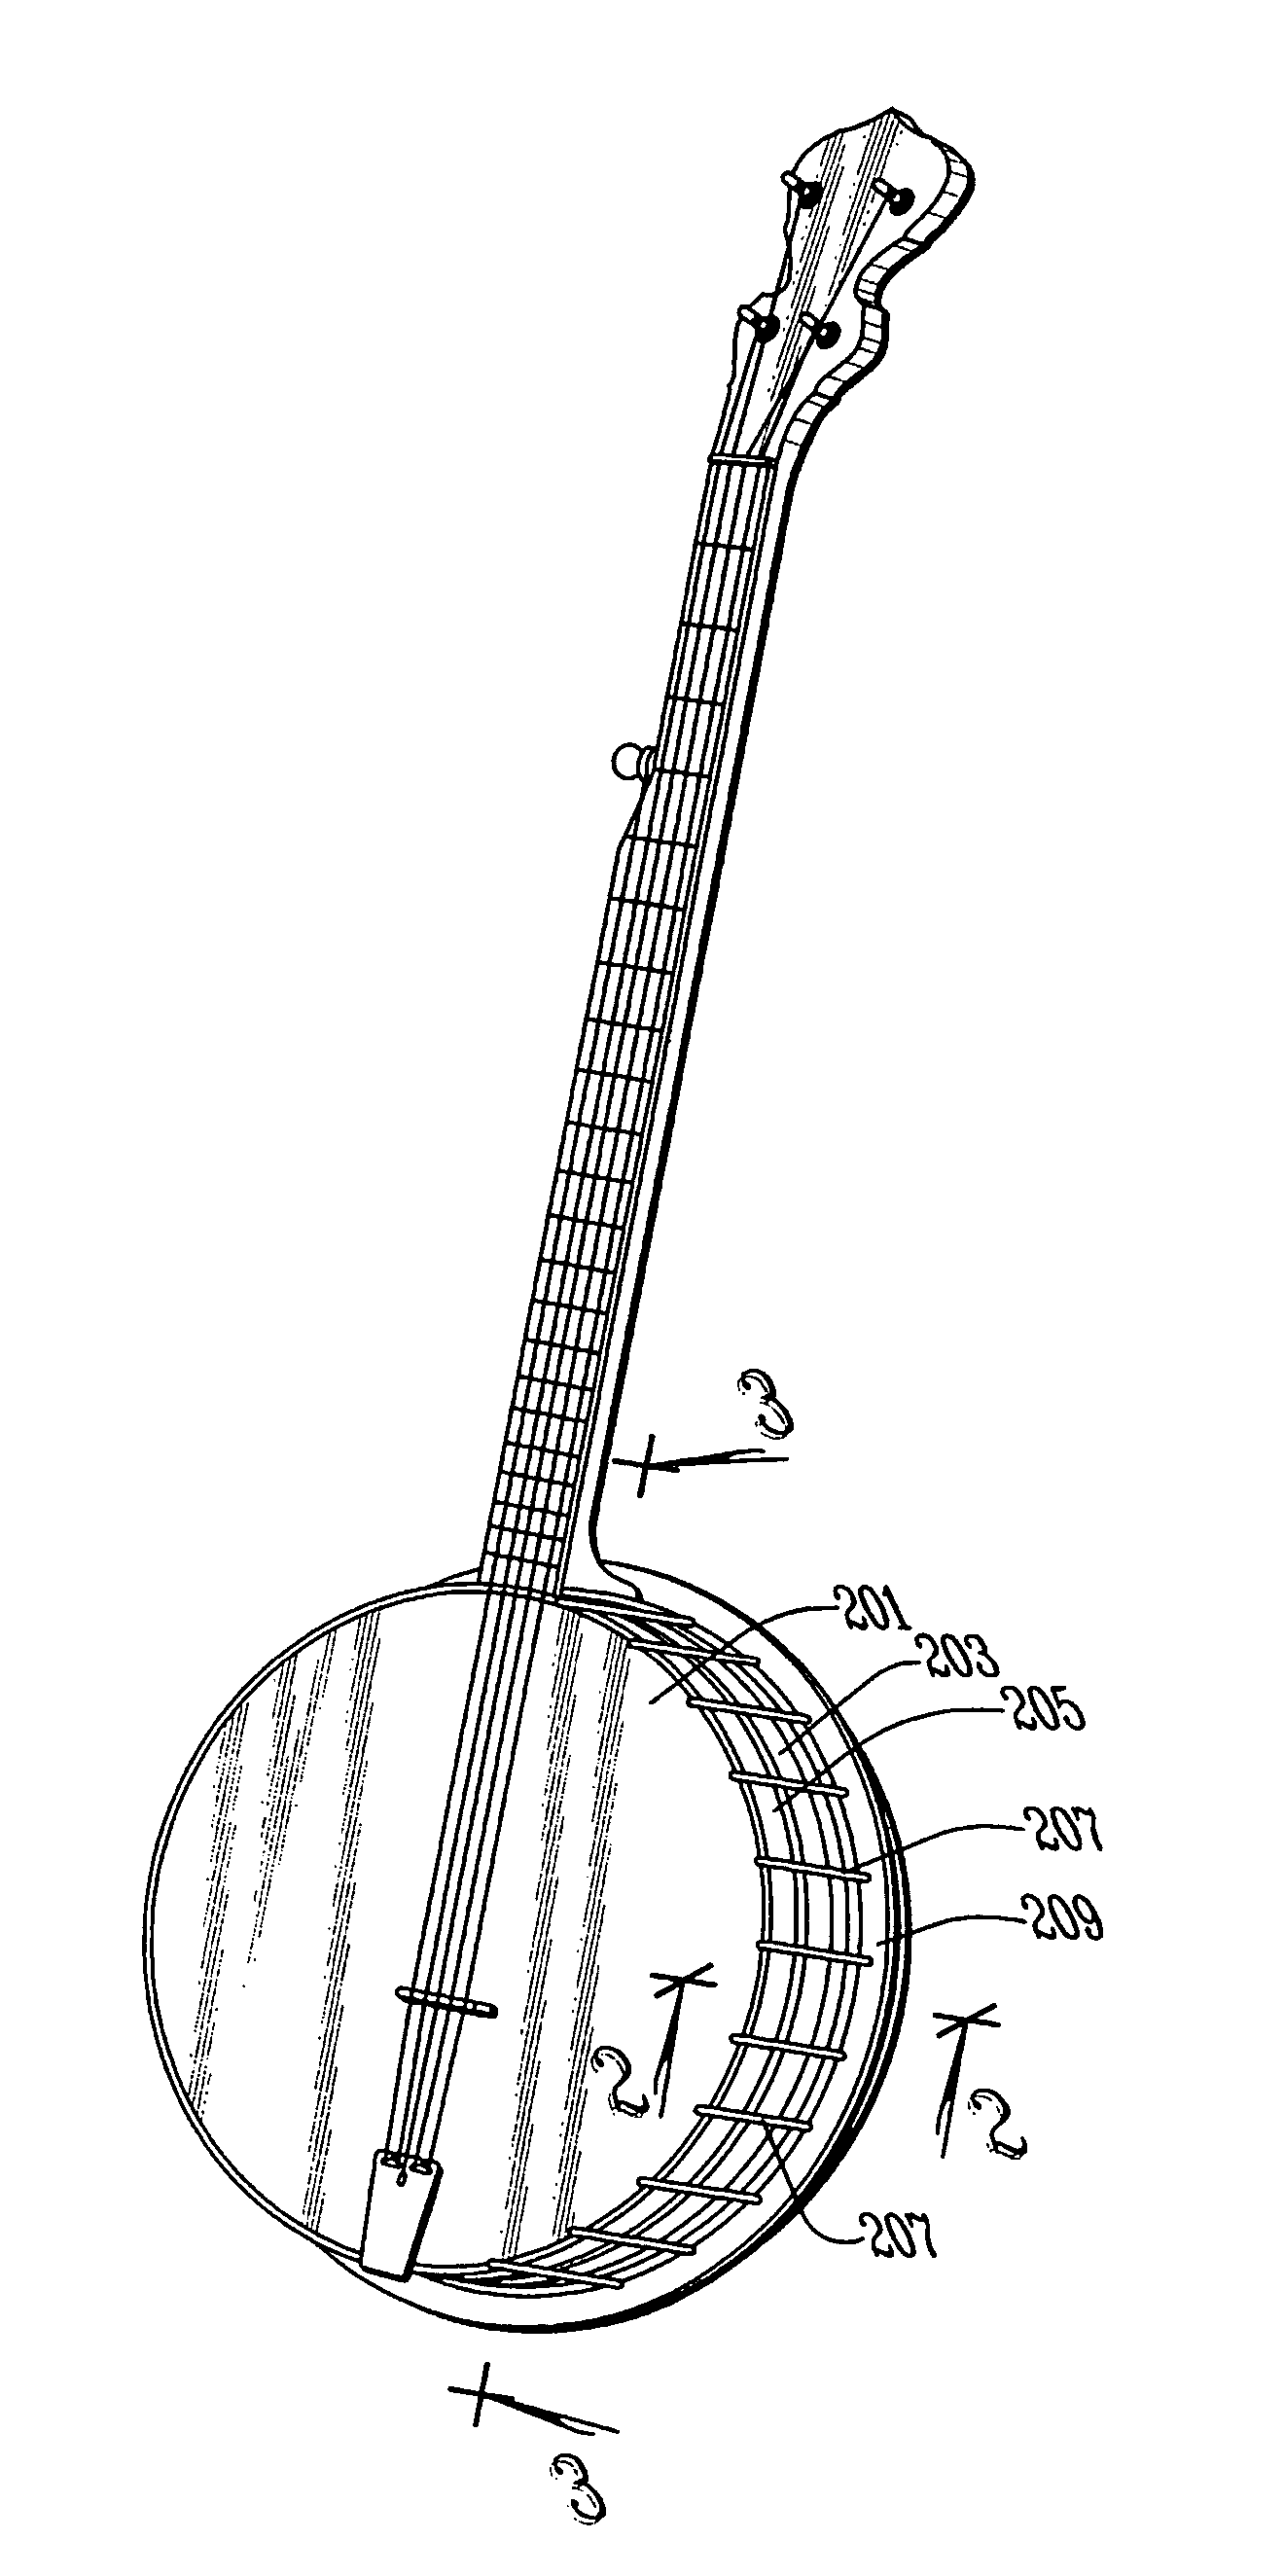 Banjo tensioner